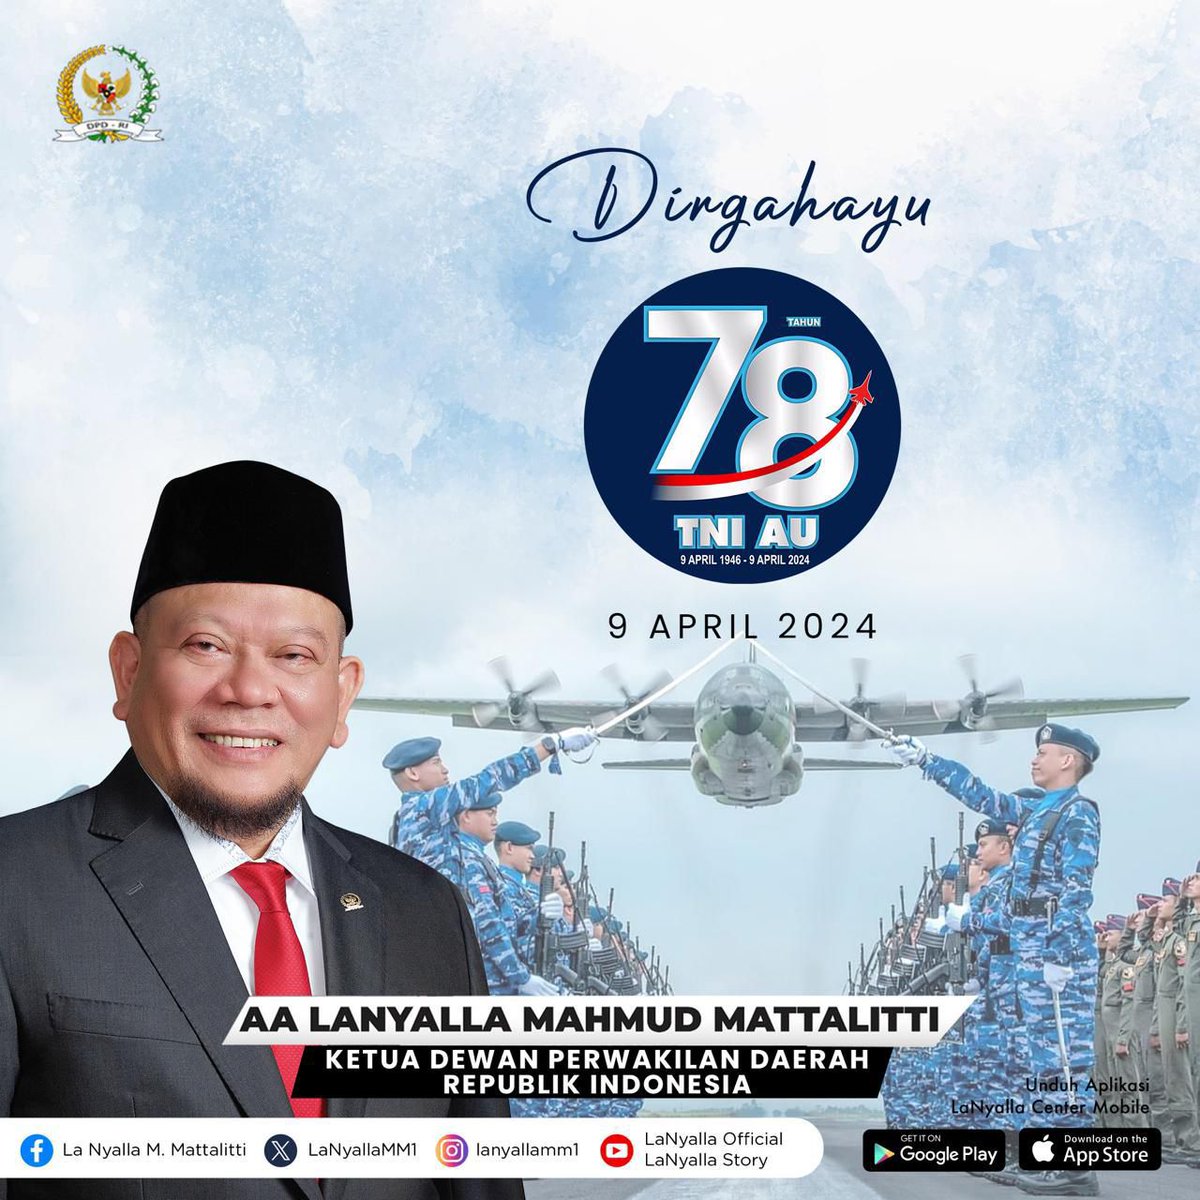 Dirgahayu TNI Angkatan Udara ke-78
09 April 2024

Semoga TNI Angkatan Udara semakin profesional dan selalu dicintai rakyat Indonesia

Jayalah selalu di udara.

#LaNyalla #ketuadpdri #dpdri #tniau #huttniau #huttniau78 #swabhuwanapaksa #jauhdilangitdekatdihati #puspentni